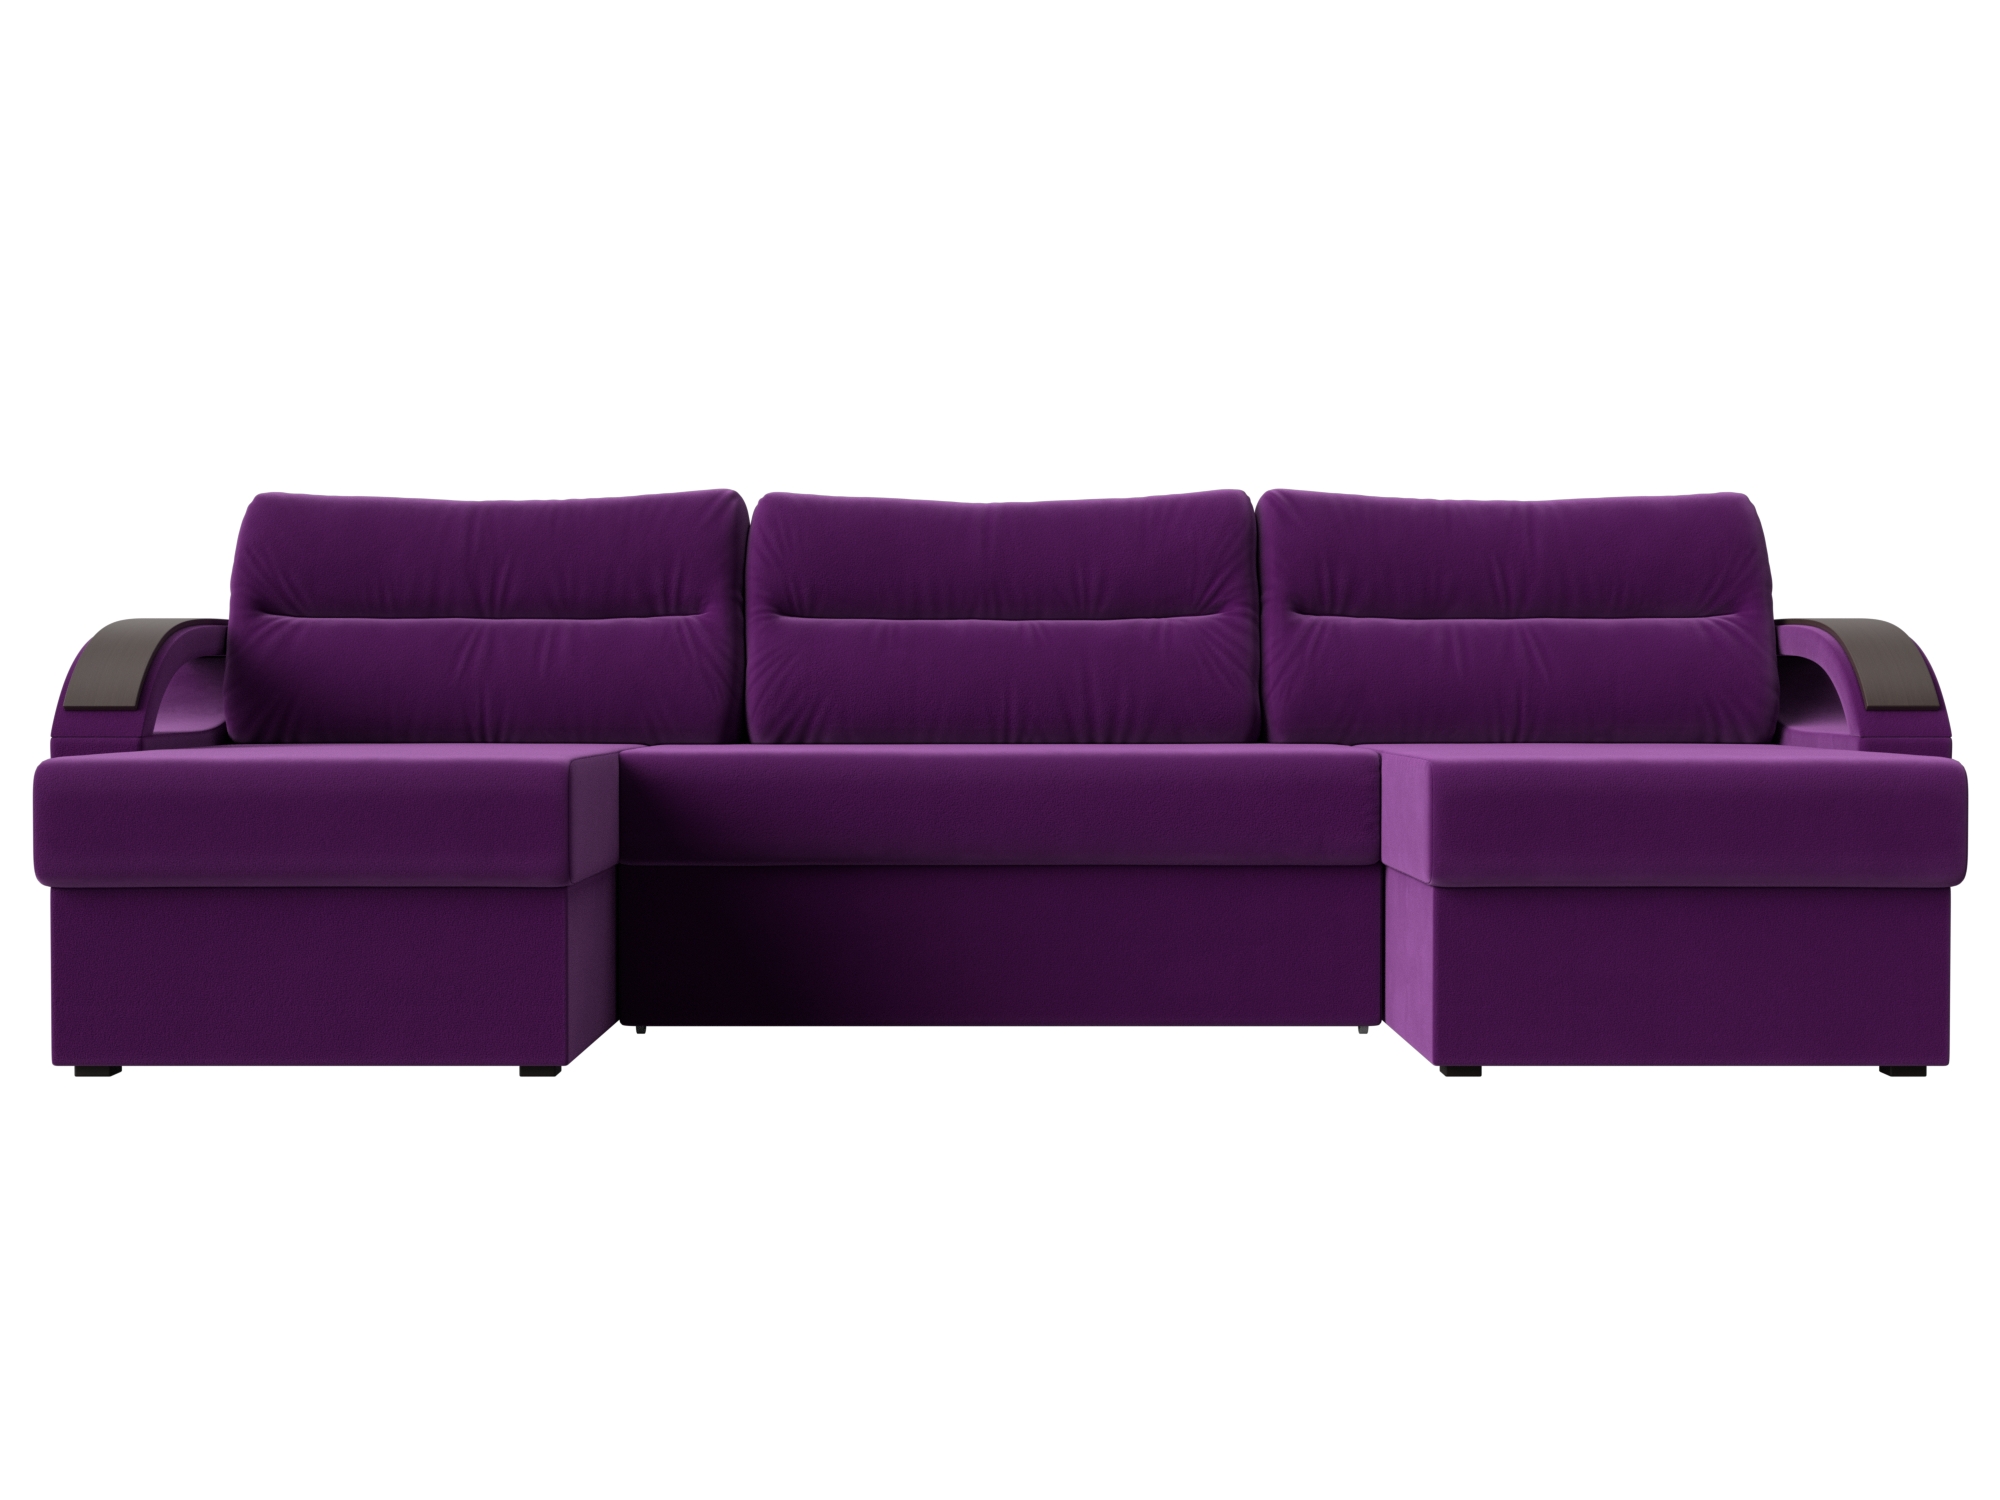 П-образный диван Форсайт MebelVia , Фиолетовый, Микровельвет, ЛДСП диван п образный валенсия п mebelvia фиолетовый микровельвет лдсп